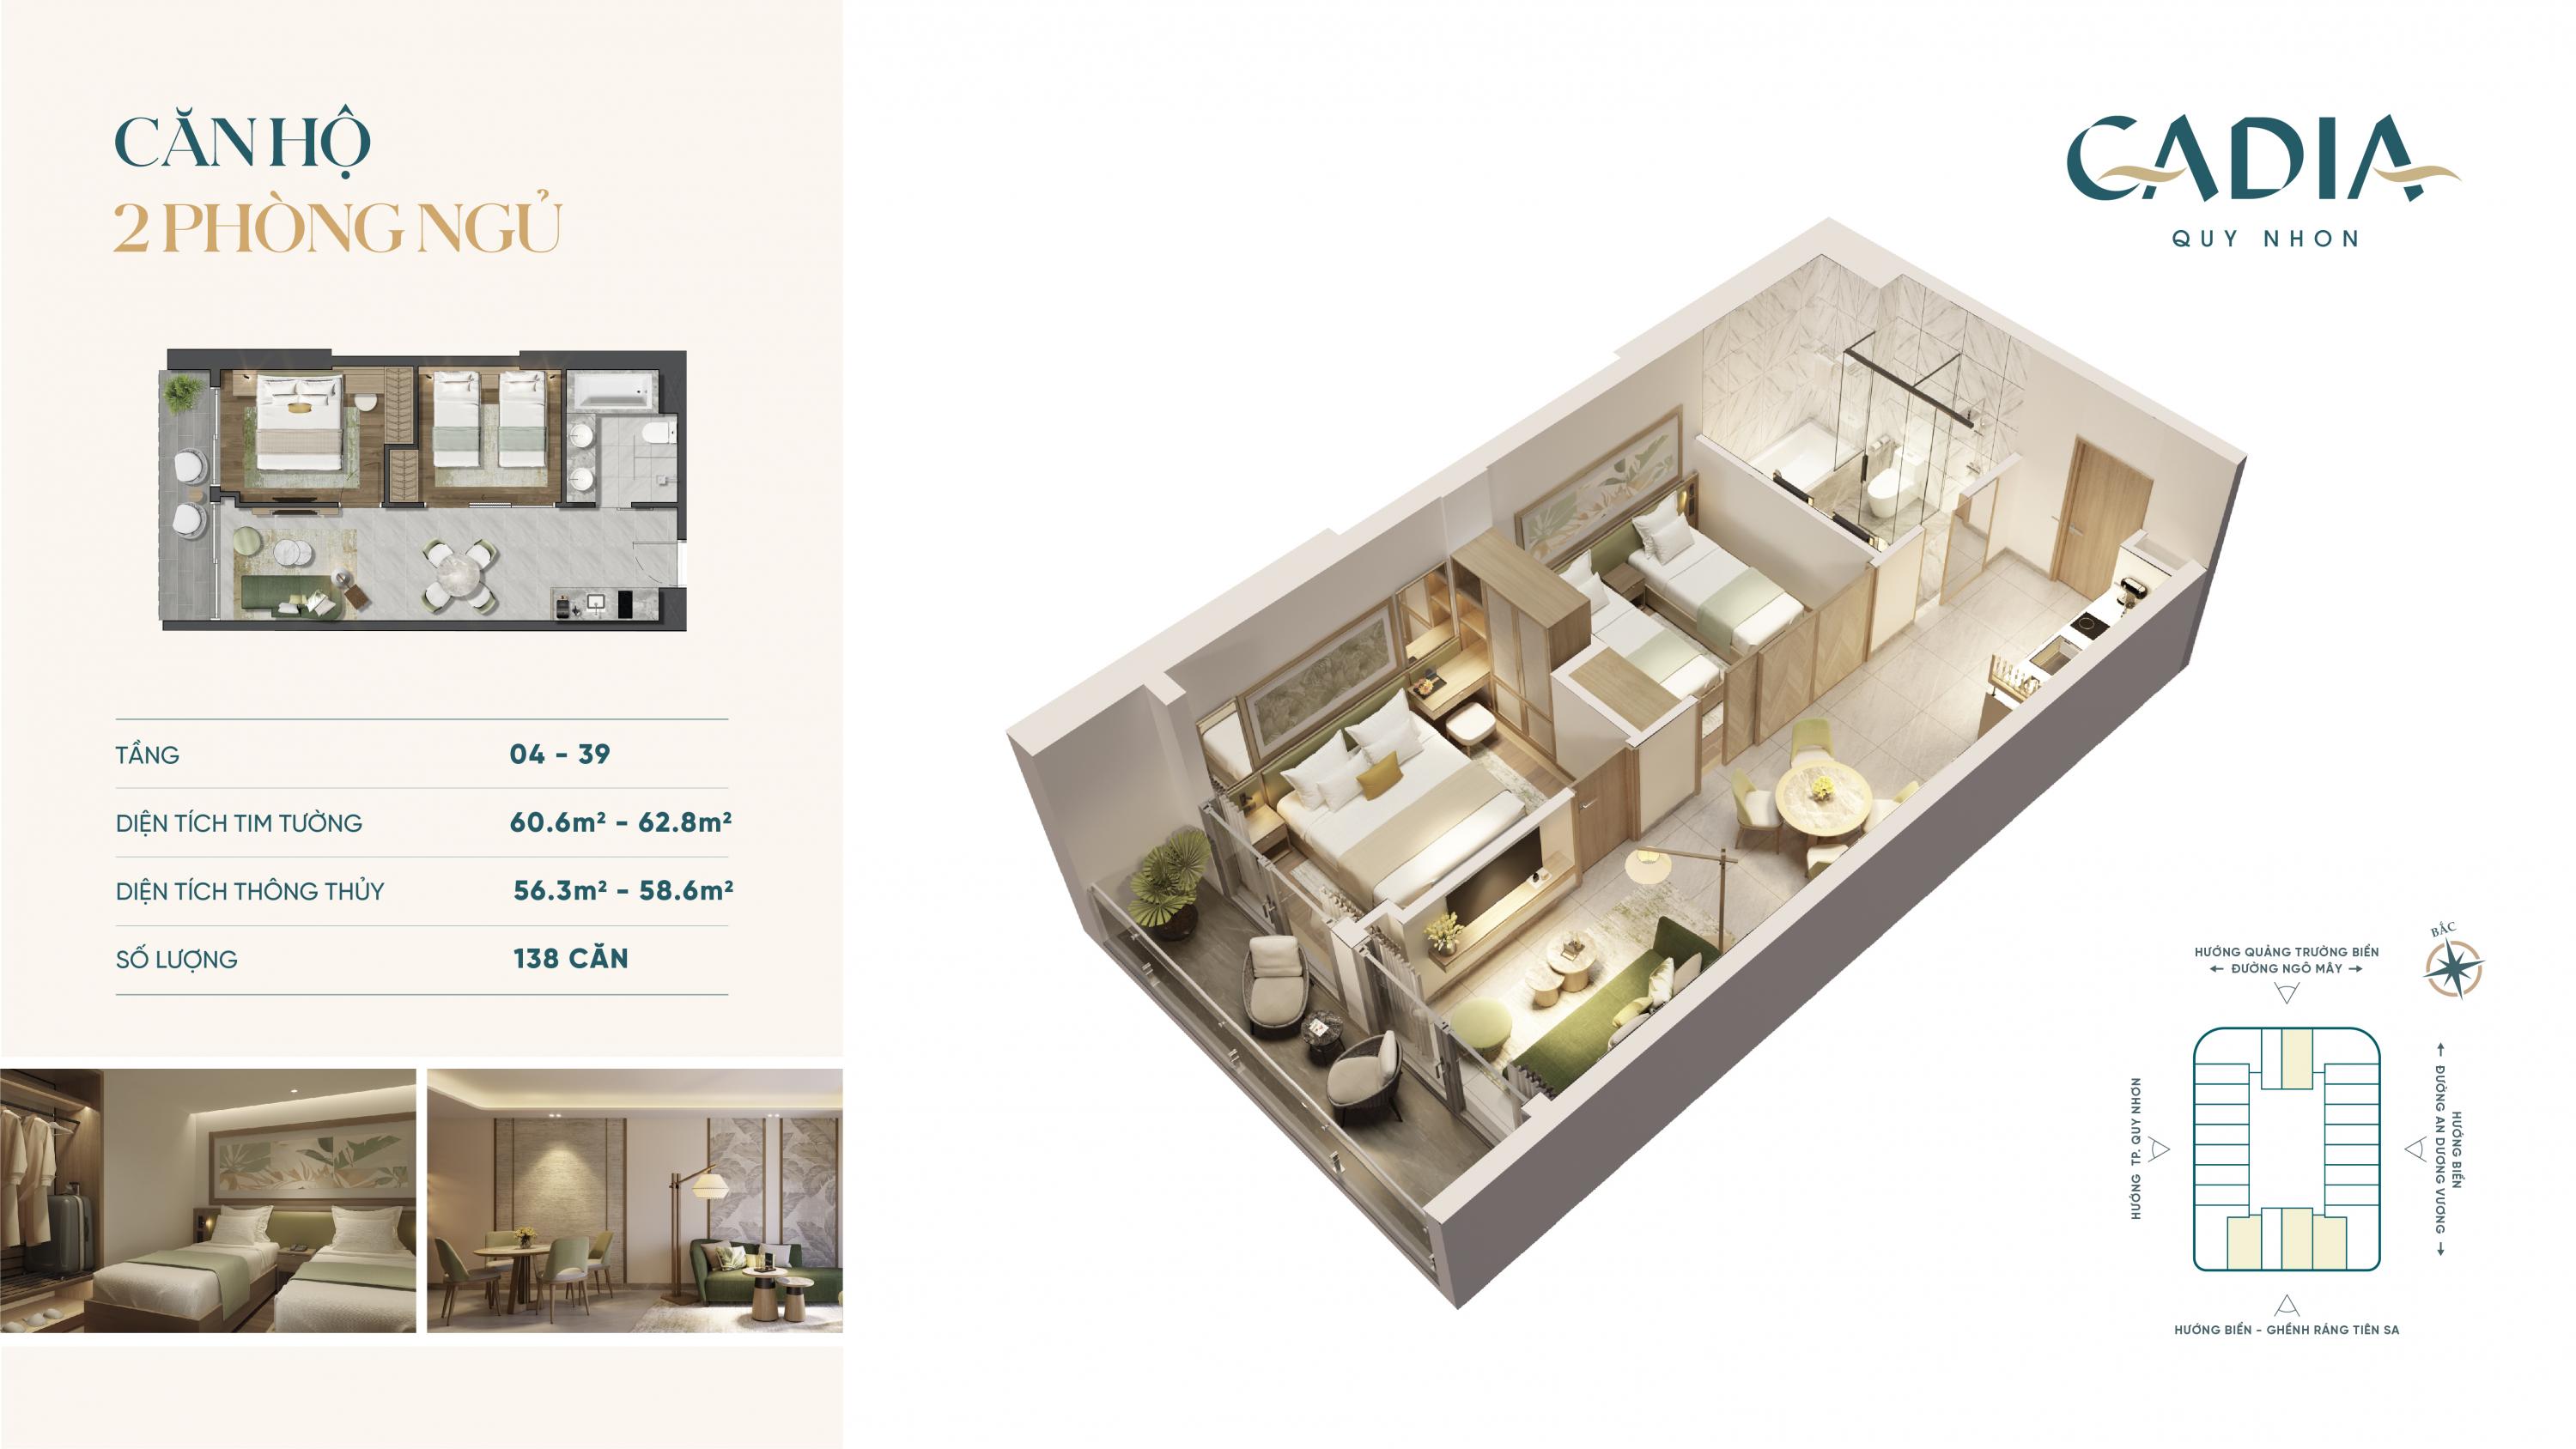 Thiết kế 2 phòng ngủ căn hộ Cadia Quy Nhơn